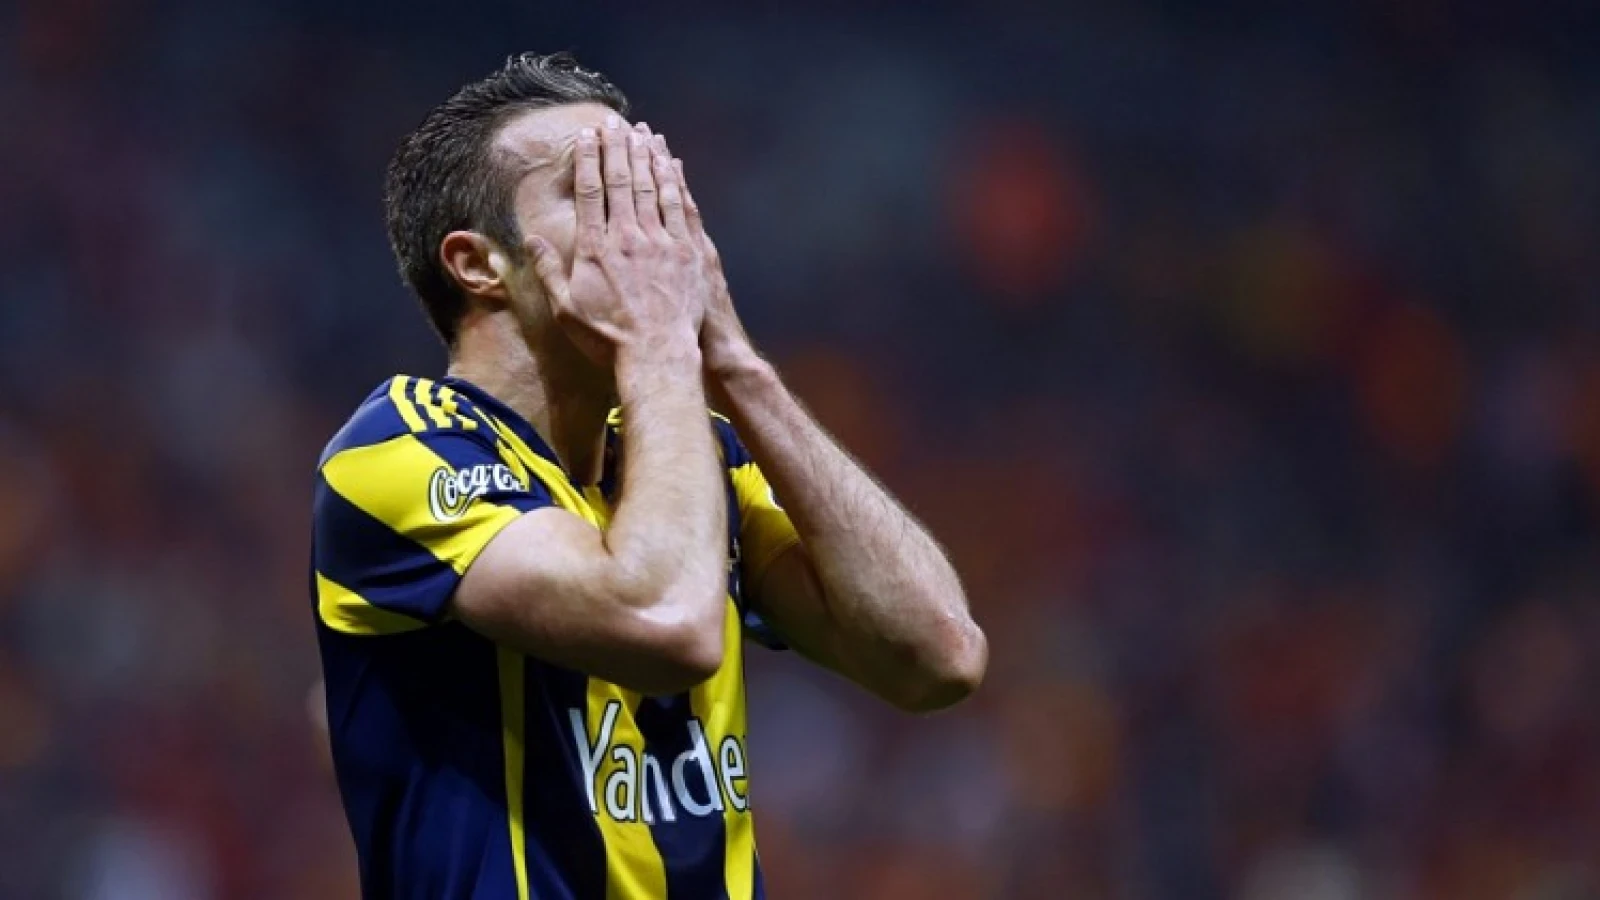 'Fenerbahçe mist Van Persie tegen Feyenoord'